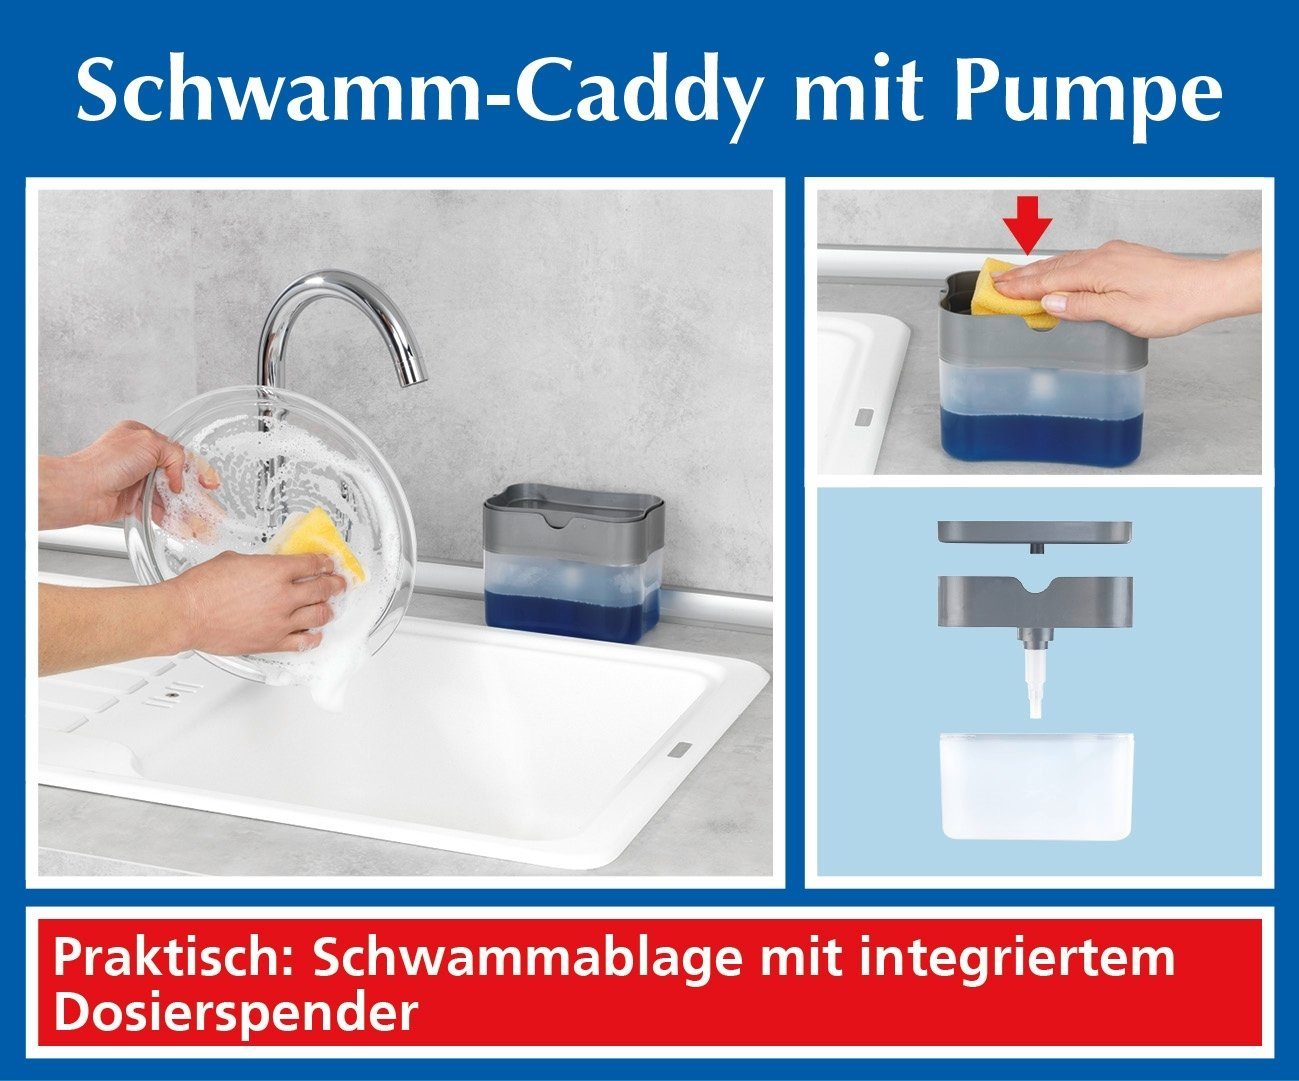 Pumpe ml. Schwamm-Caddy 500 Maximex Reinigungsschwamm mit Fassungsvermögen: